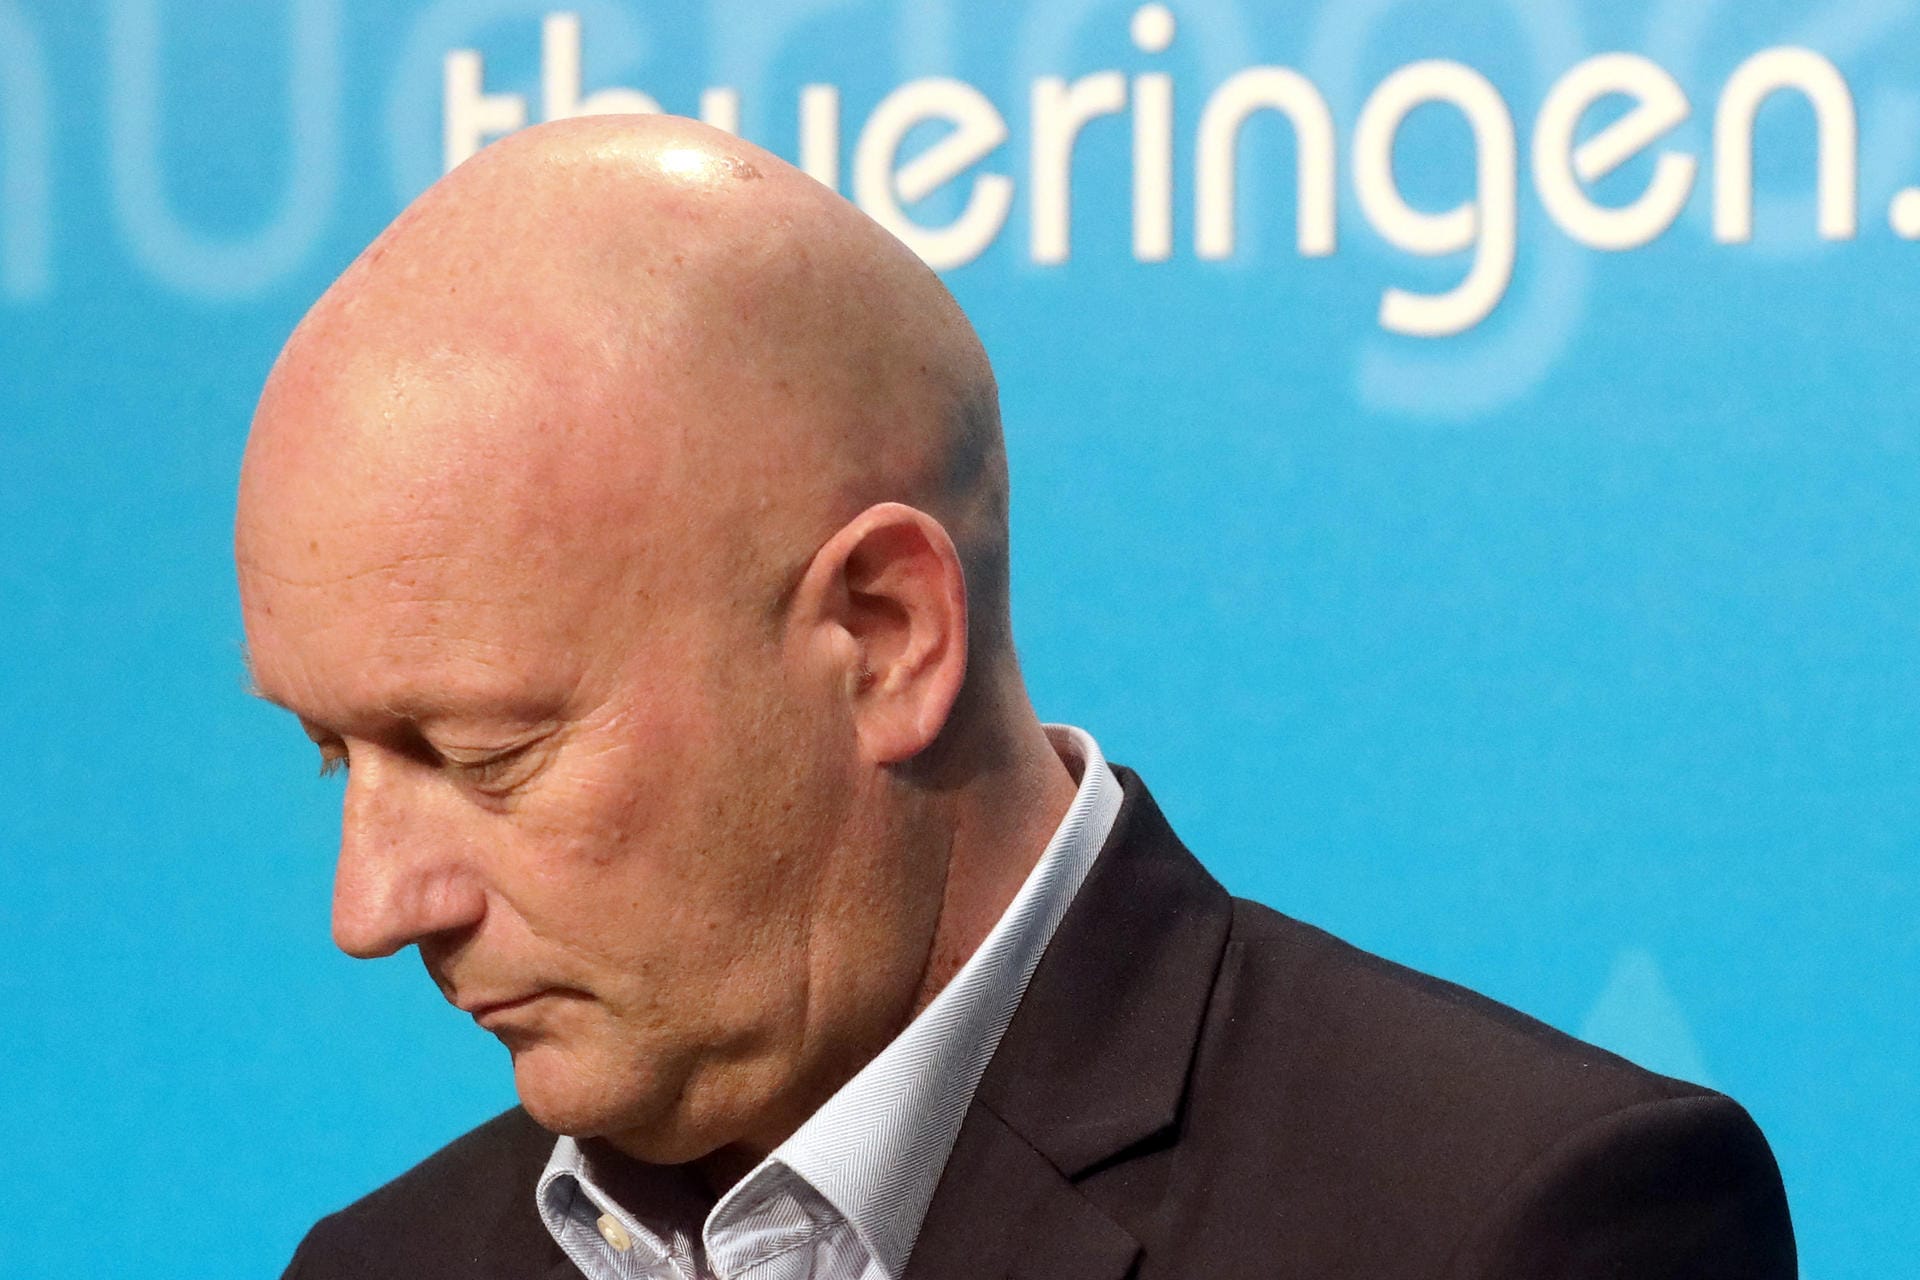 5. Februar 2020: Im thüringischen Landtag wird überraschend der FDP-Politiker Thomas Kemmerich zum Ministerpräsidenten gewählt – mit den Stimmen von CDU und AfD. Kramp-Karrenbauer wirft den thüringischen Parteikollegen vor, sich damit gegen die Beschlusslage der Partei und gegen Vorgaben der Parteispitze hinweggesetzt zu haben.